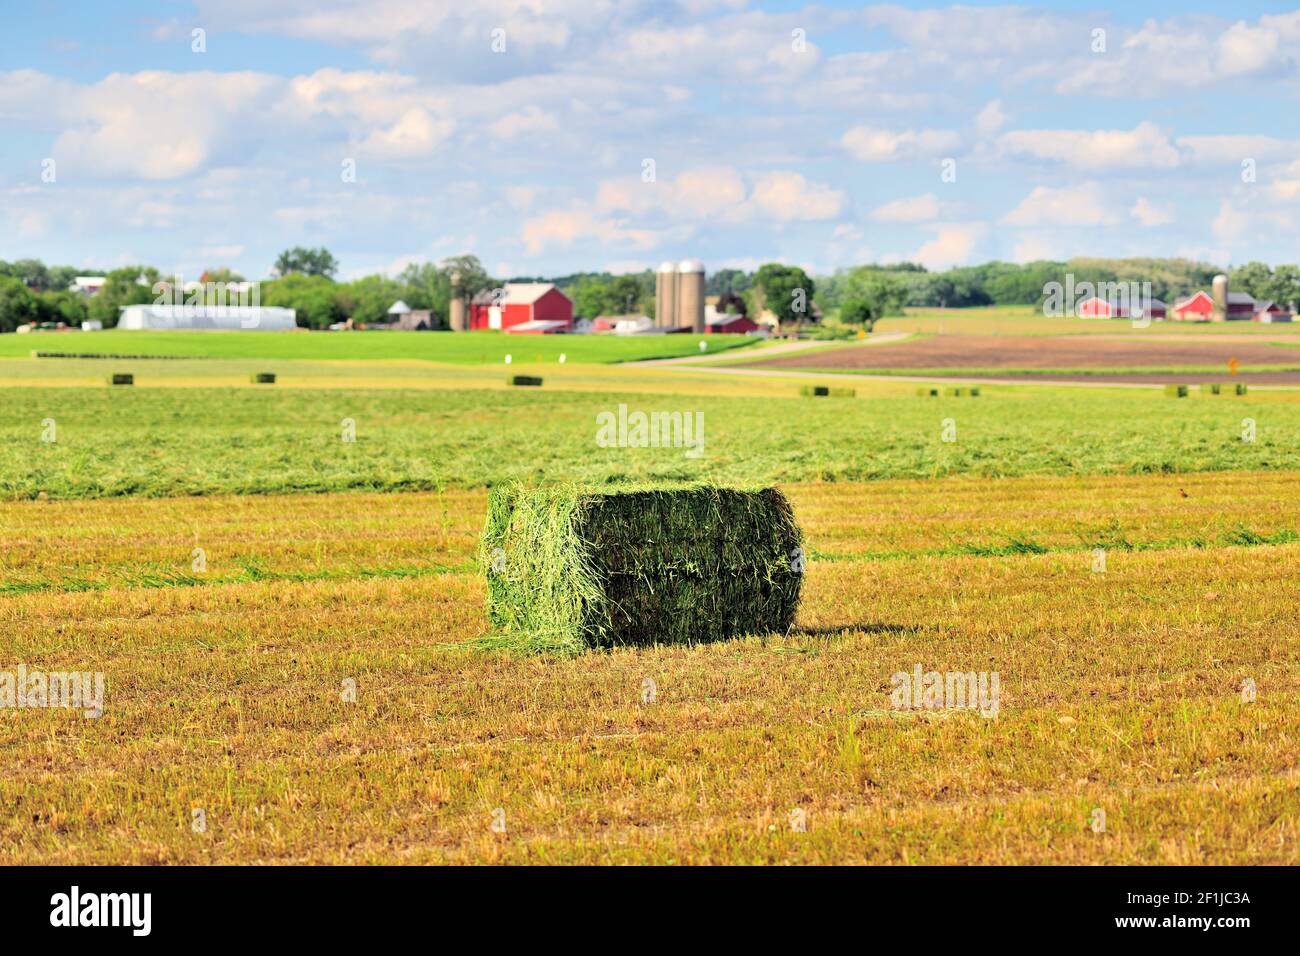 Burlington, Illinois, États-Unis. Le foin fraîchement coupé et mis en balles se trouve dans un champ au milieu du pays agricole de l'Illinois. Banque D'Images